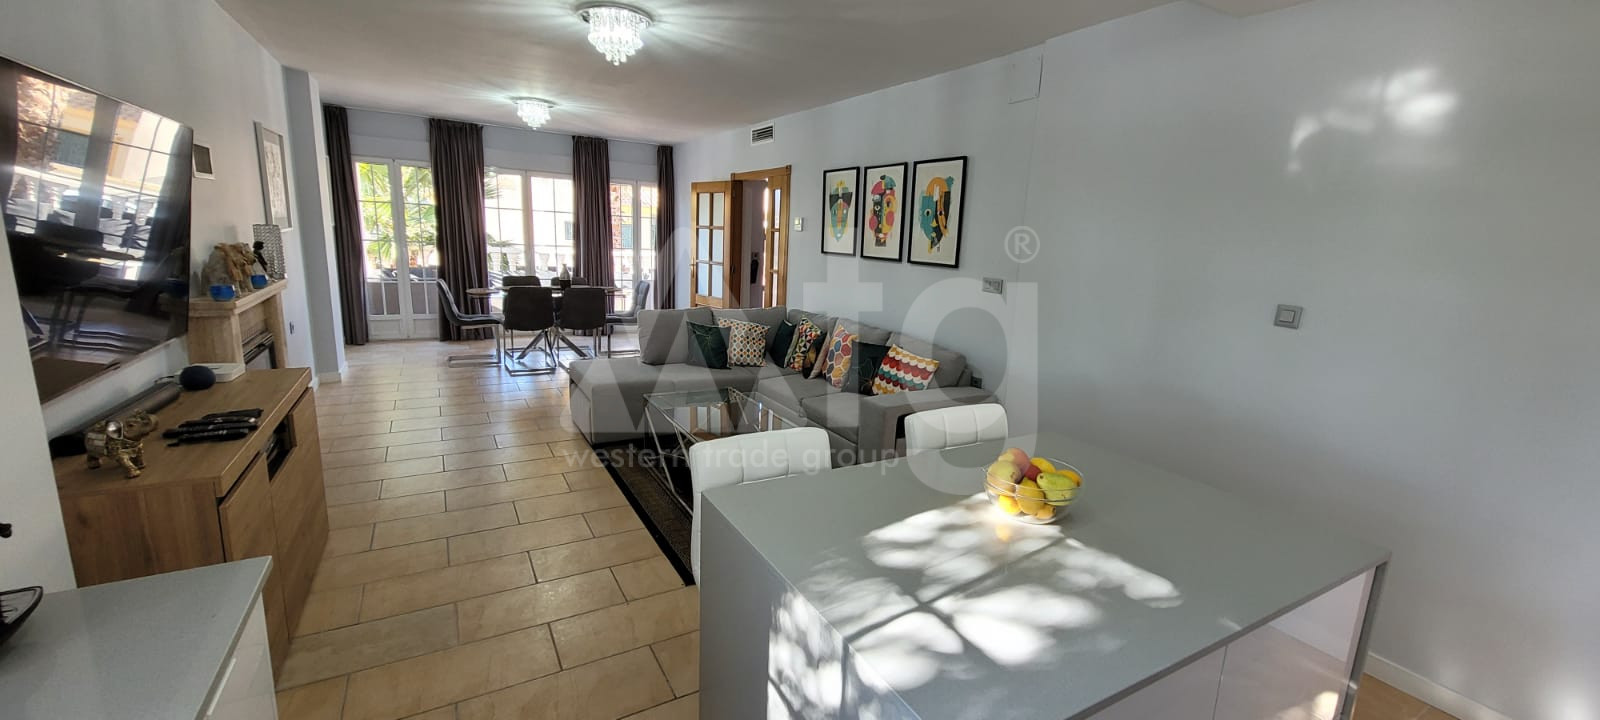 4 bedroom Villa in Almoradí - JLM50008 - 9